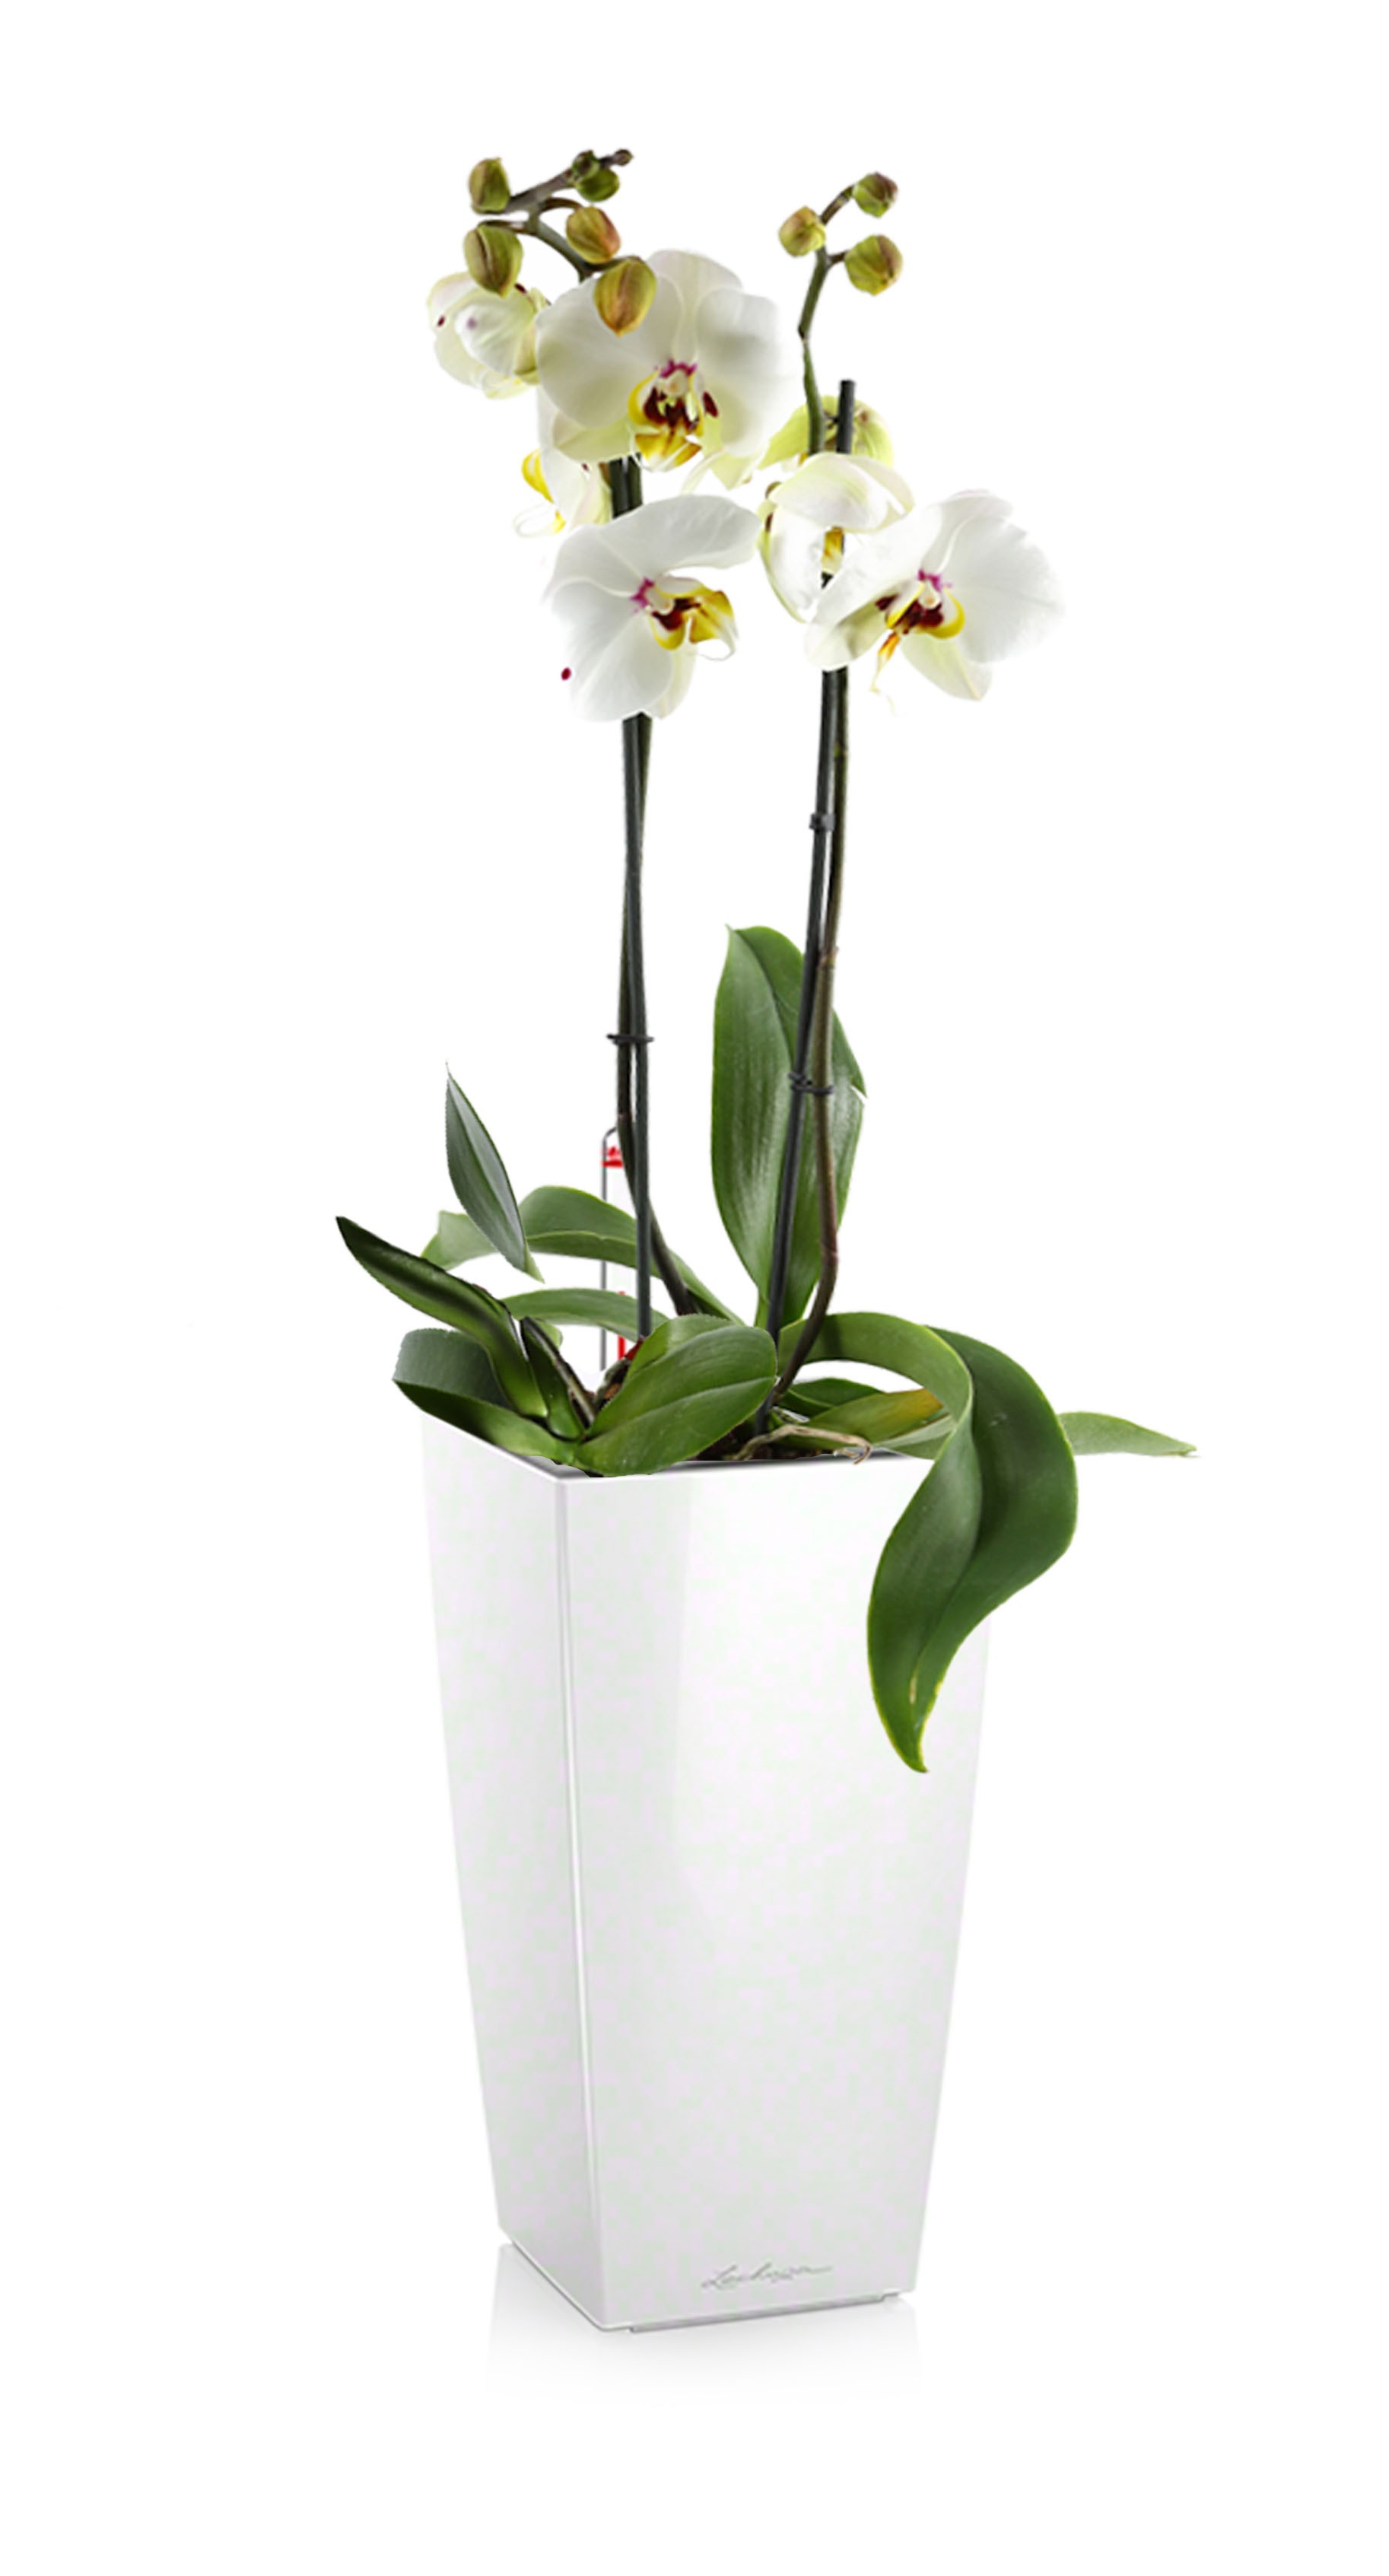 Что символизирует цветок Орхидея в доме, в подарок?